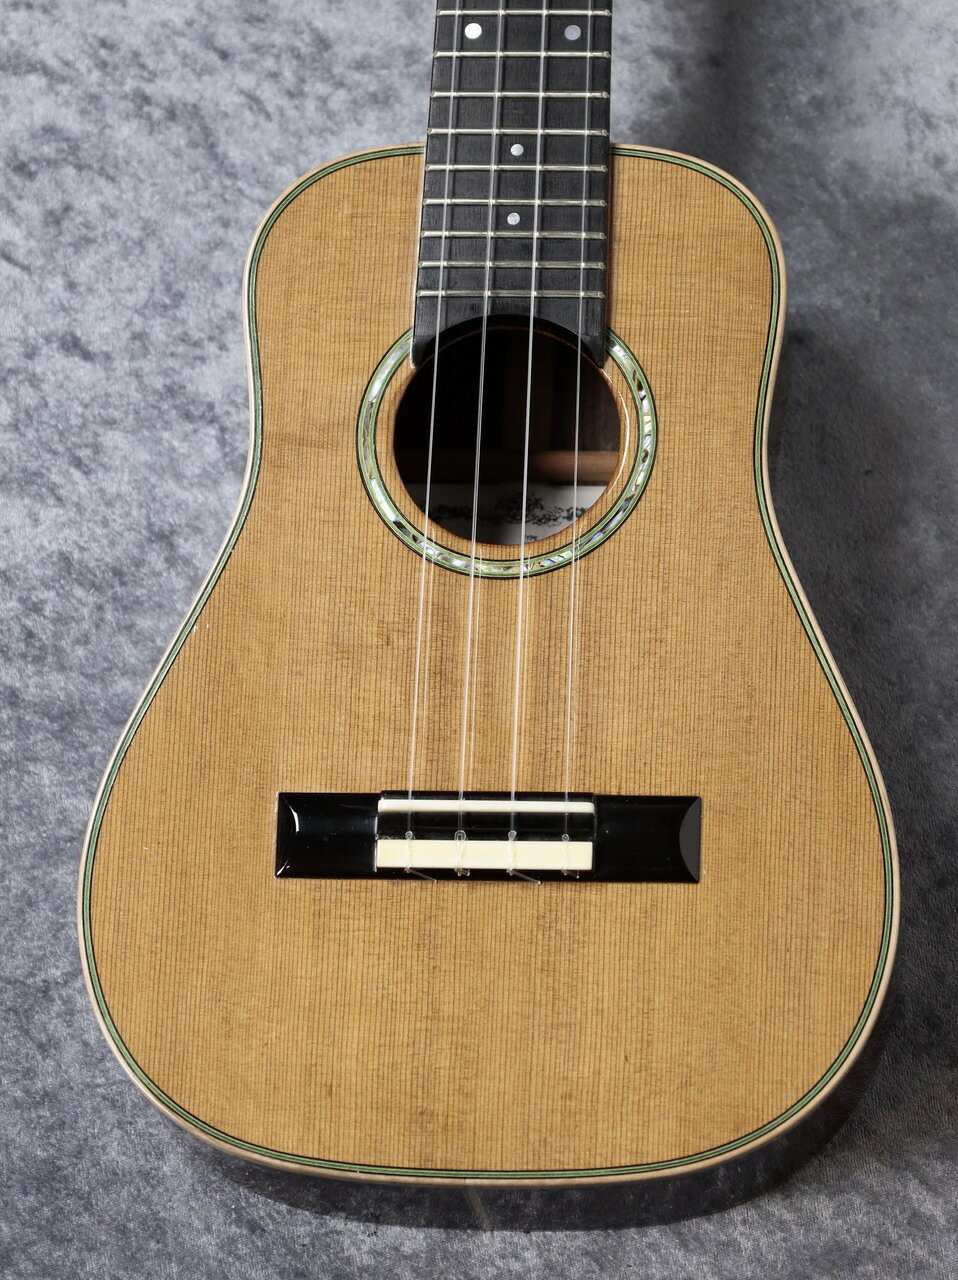 日本の伝統とヨーロッパの技術を高いレベルで融合させた実力派。 1947年茨城県日立市生まれ。 1965年ギター製作の道へ進む。 1969年独立して所沢市に工房を構える。 いわゆるクラシックギター定番の組み合わせで木材を使用。 明るくスッと抜けるようなサウンドキャラクター。 ドレッドノートシェイプのギターを小さくしたようなベーシックなデザイン。 クラシックギターのような安定度の高いウクレレを探している方にはドンズバでは無いでしょうか。 可能な限りクリーニングを行いましたが 小さな打痕(2mm程度)が数カ所見られます。 ローズウッドならではの硬質な美しさをスプルースがしっかり届かせてくれています。 もっともっと弾いて育つ感触もありますので、いっぱい弾いて欲しいです。 -Specification- Body Top : Solid Spruce Body Back & Sides : Solid Rosewood Neck : Mahogany Finish : Gloss Case : Semi Hard Case クロサワ楽器店はKAMAKA UKULELEの日本総代理店です。 お客様に末永くご愛用頂けますよう、ご購入後の調整、 万一のトラブルなどにも全力でサポートさせて頂きますのでご安心下さいませ。 Low Gへの張り替え、ピックアップの取付なども対応しております。 お気軽にお申し付け下さいませ。 中古6ヶ月保証、セミハードケース付属。 -------------------------------------------------------------------------------------------------------------------------- 撮影機材の性能や、お使いの画面環境によって実物と色味が異なって映ることがございます。 予めご了承をお願い致します。 楽器の詳細はお気軽にお問合せ下さい、全国通信販売も承っております。 当店はリペアマン常駐の店舗です。 弦高など無料で調整してから発送することも可能です。 また、アフターサービスやメンテナンス等、行き届いたサービスをお約束します。　 【買取・委託】 買取・下取りお待ちしております！ ご不要になった楽器がございましたら、高価買取致します！ また、委託品もお預かりも可能でございます。 お気軽にお問い合わせ下さいませ！ 【リニューアル】 お茶の水駅前店のアコースティックギター＆ウクレレフロアが新しくオープン！ JR御茶ノ水駅から徒歩30秒！ Kamaka & Martin Ukulele 日本総代理店ならではの在庫量！！ 綺麗なお店でお待ちしております♪ クロサワ楽器 お茶の水駅前店アコースティック＆ウクレレ館 東京都千代田区神田駿河台2-4-1 TEL 03-3293-5626